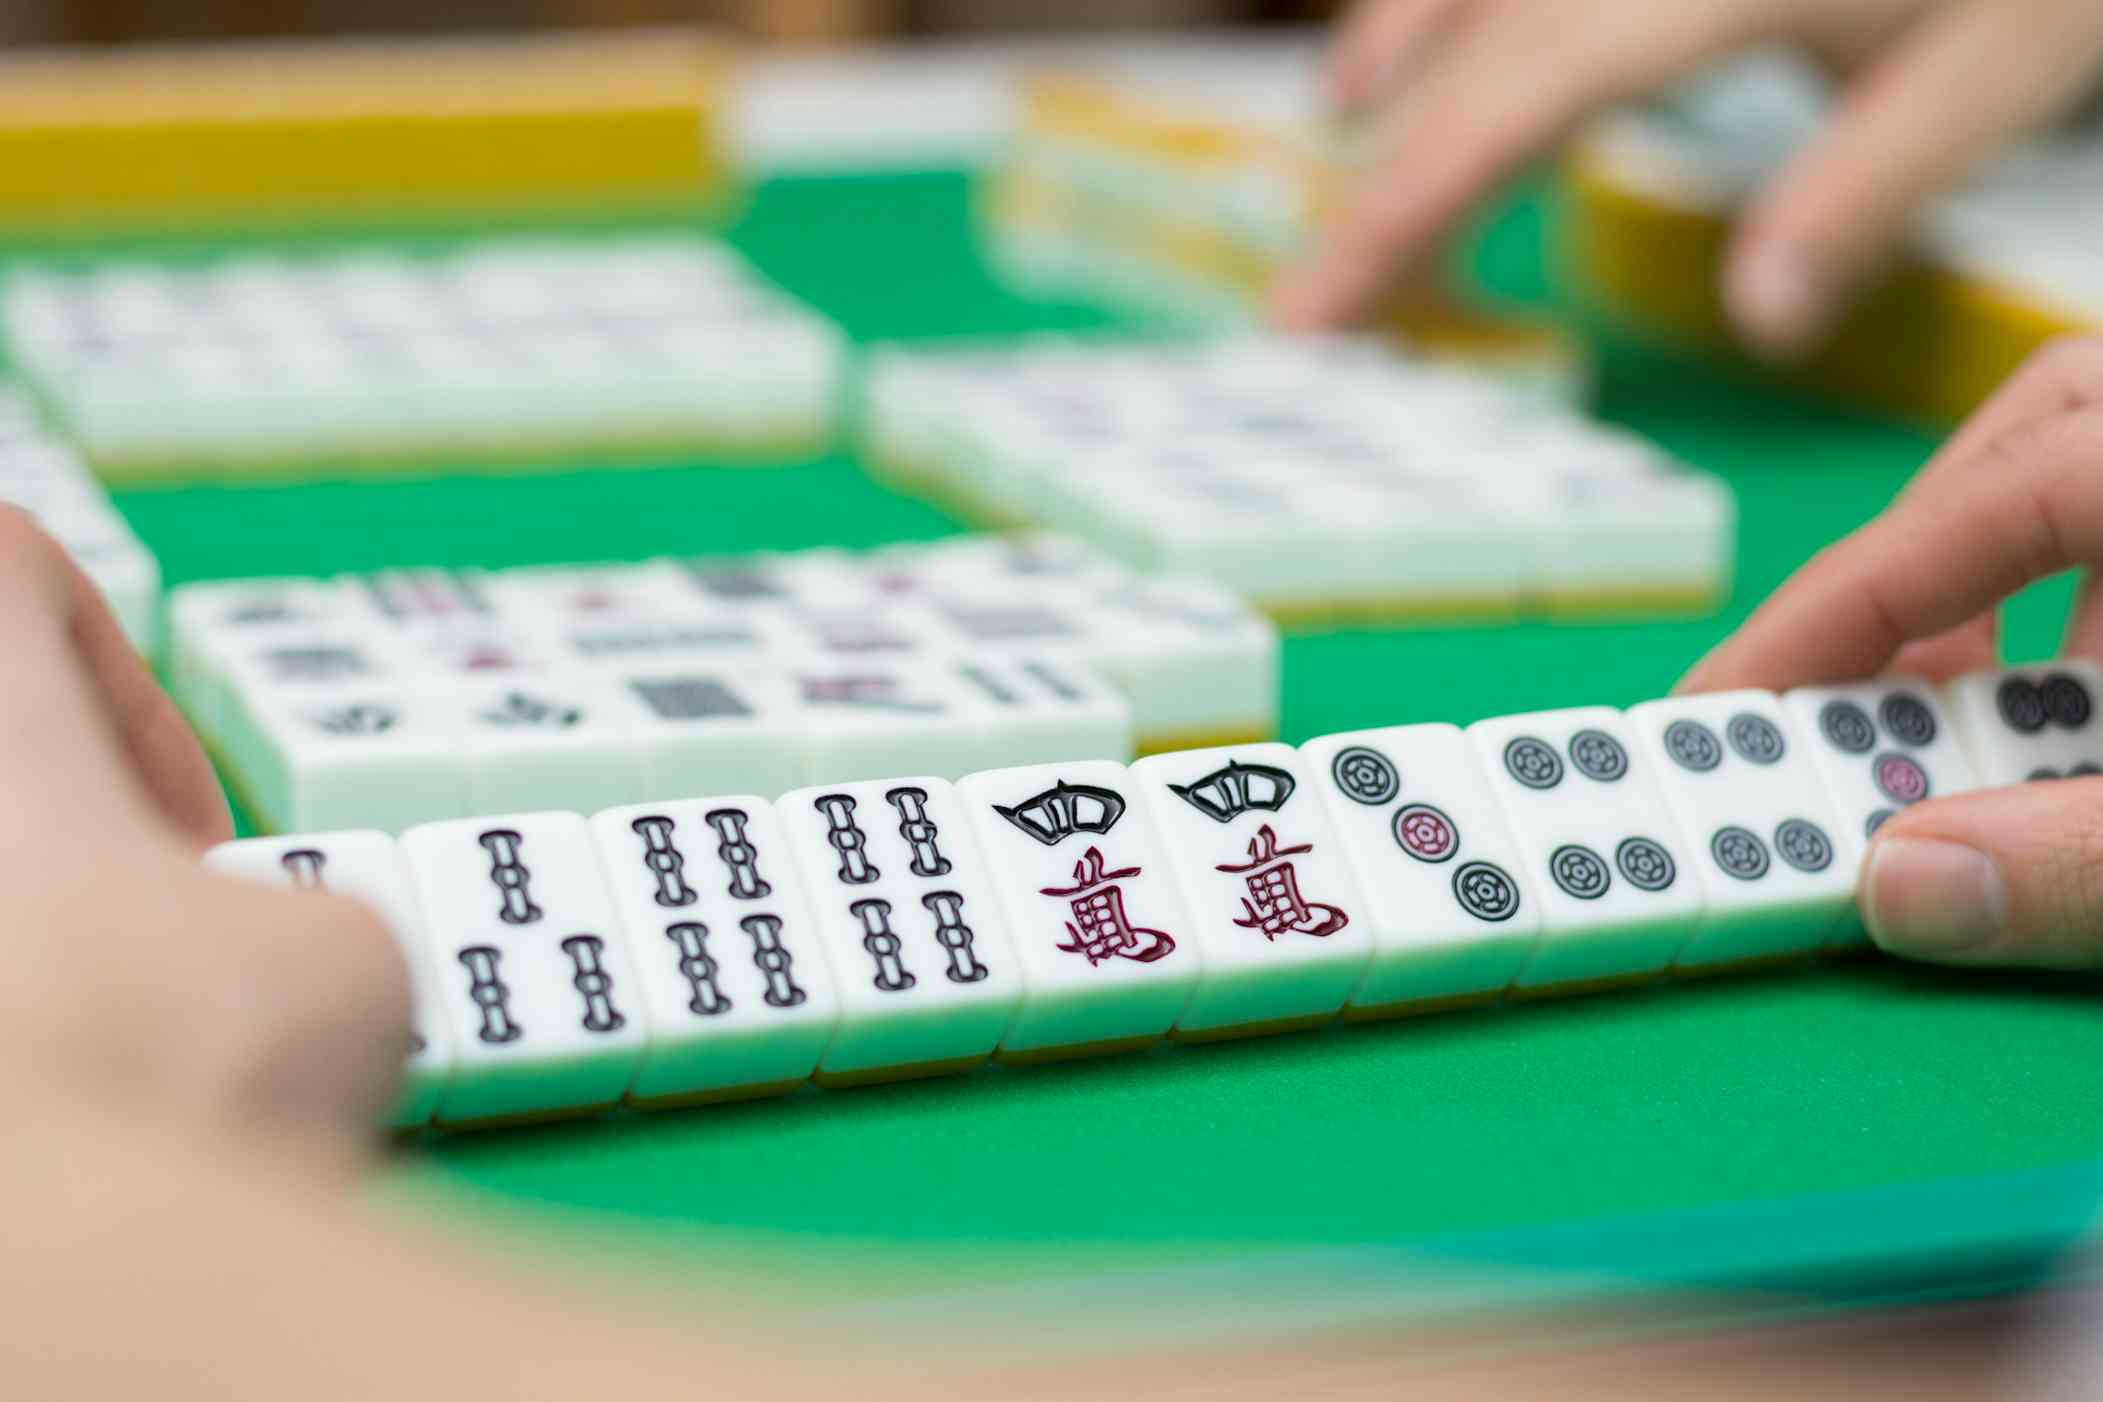 Mahjong Set 144 Mini Portable Mahjong With 1 Mahjong Playing Rules